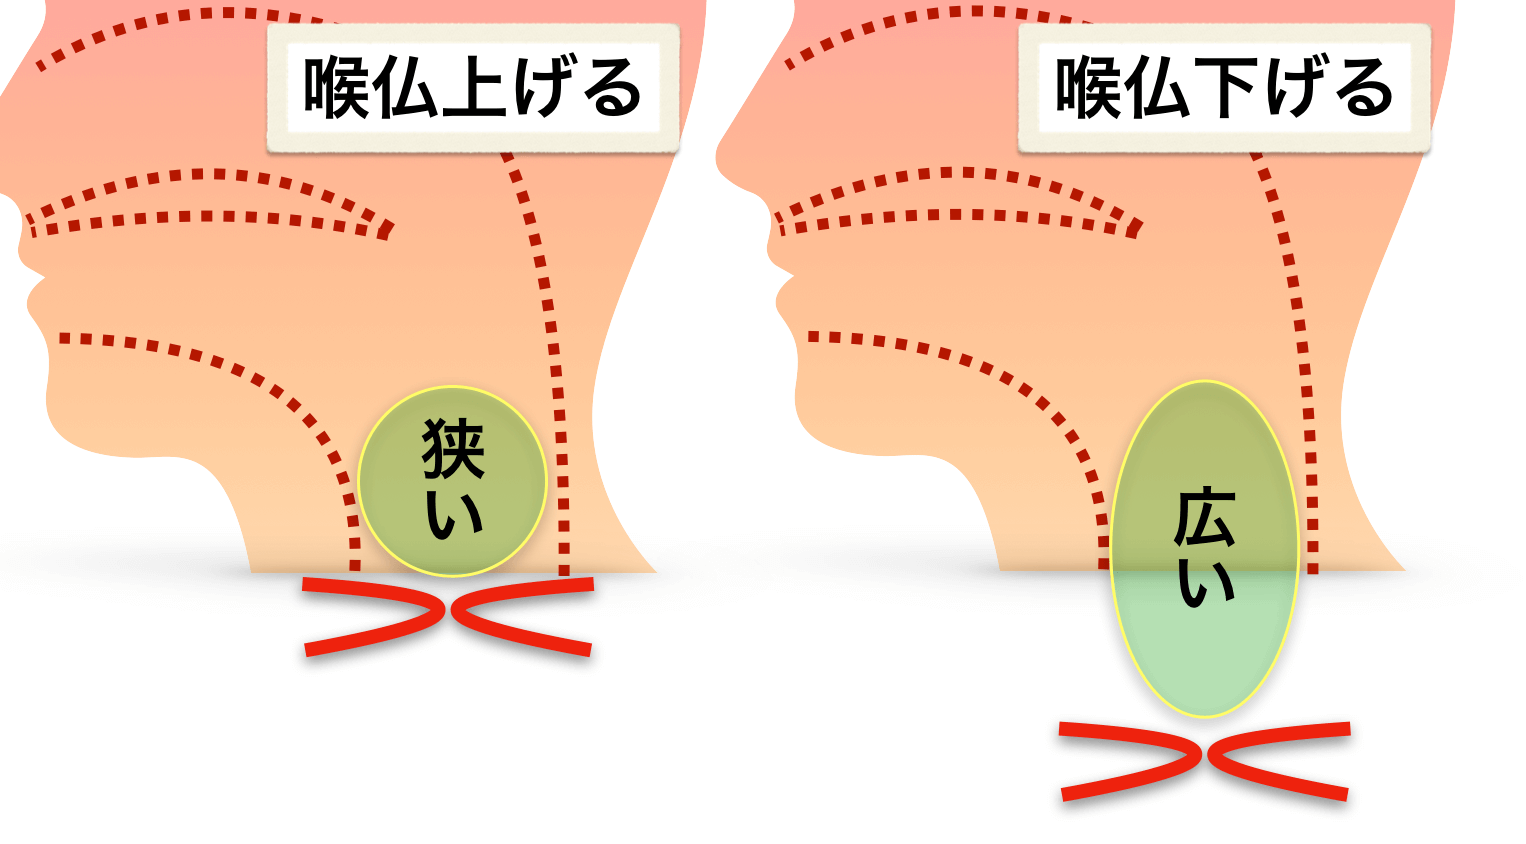 咽頭腔と喉仏の位置の関係性